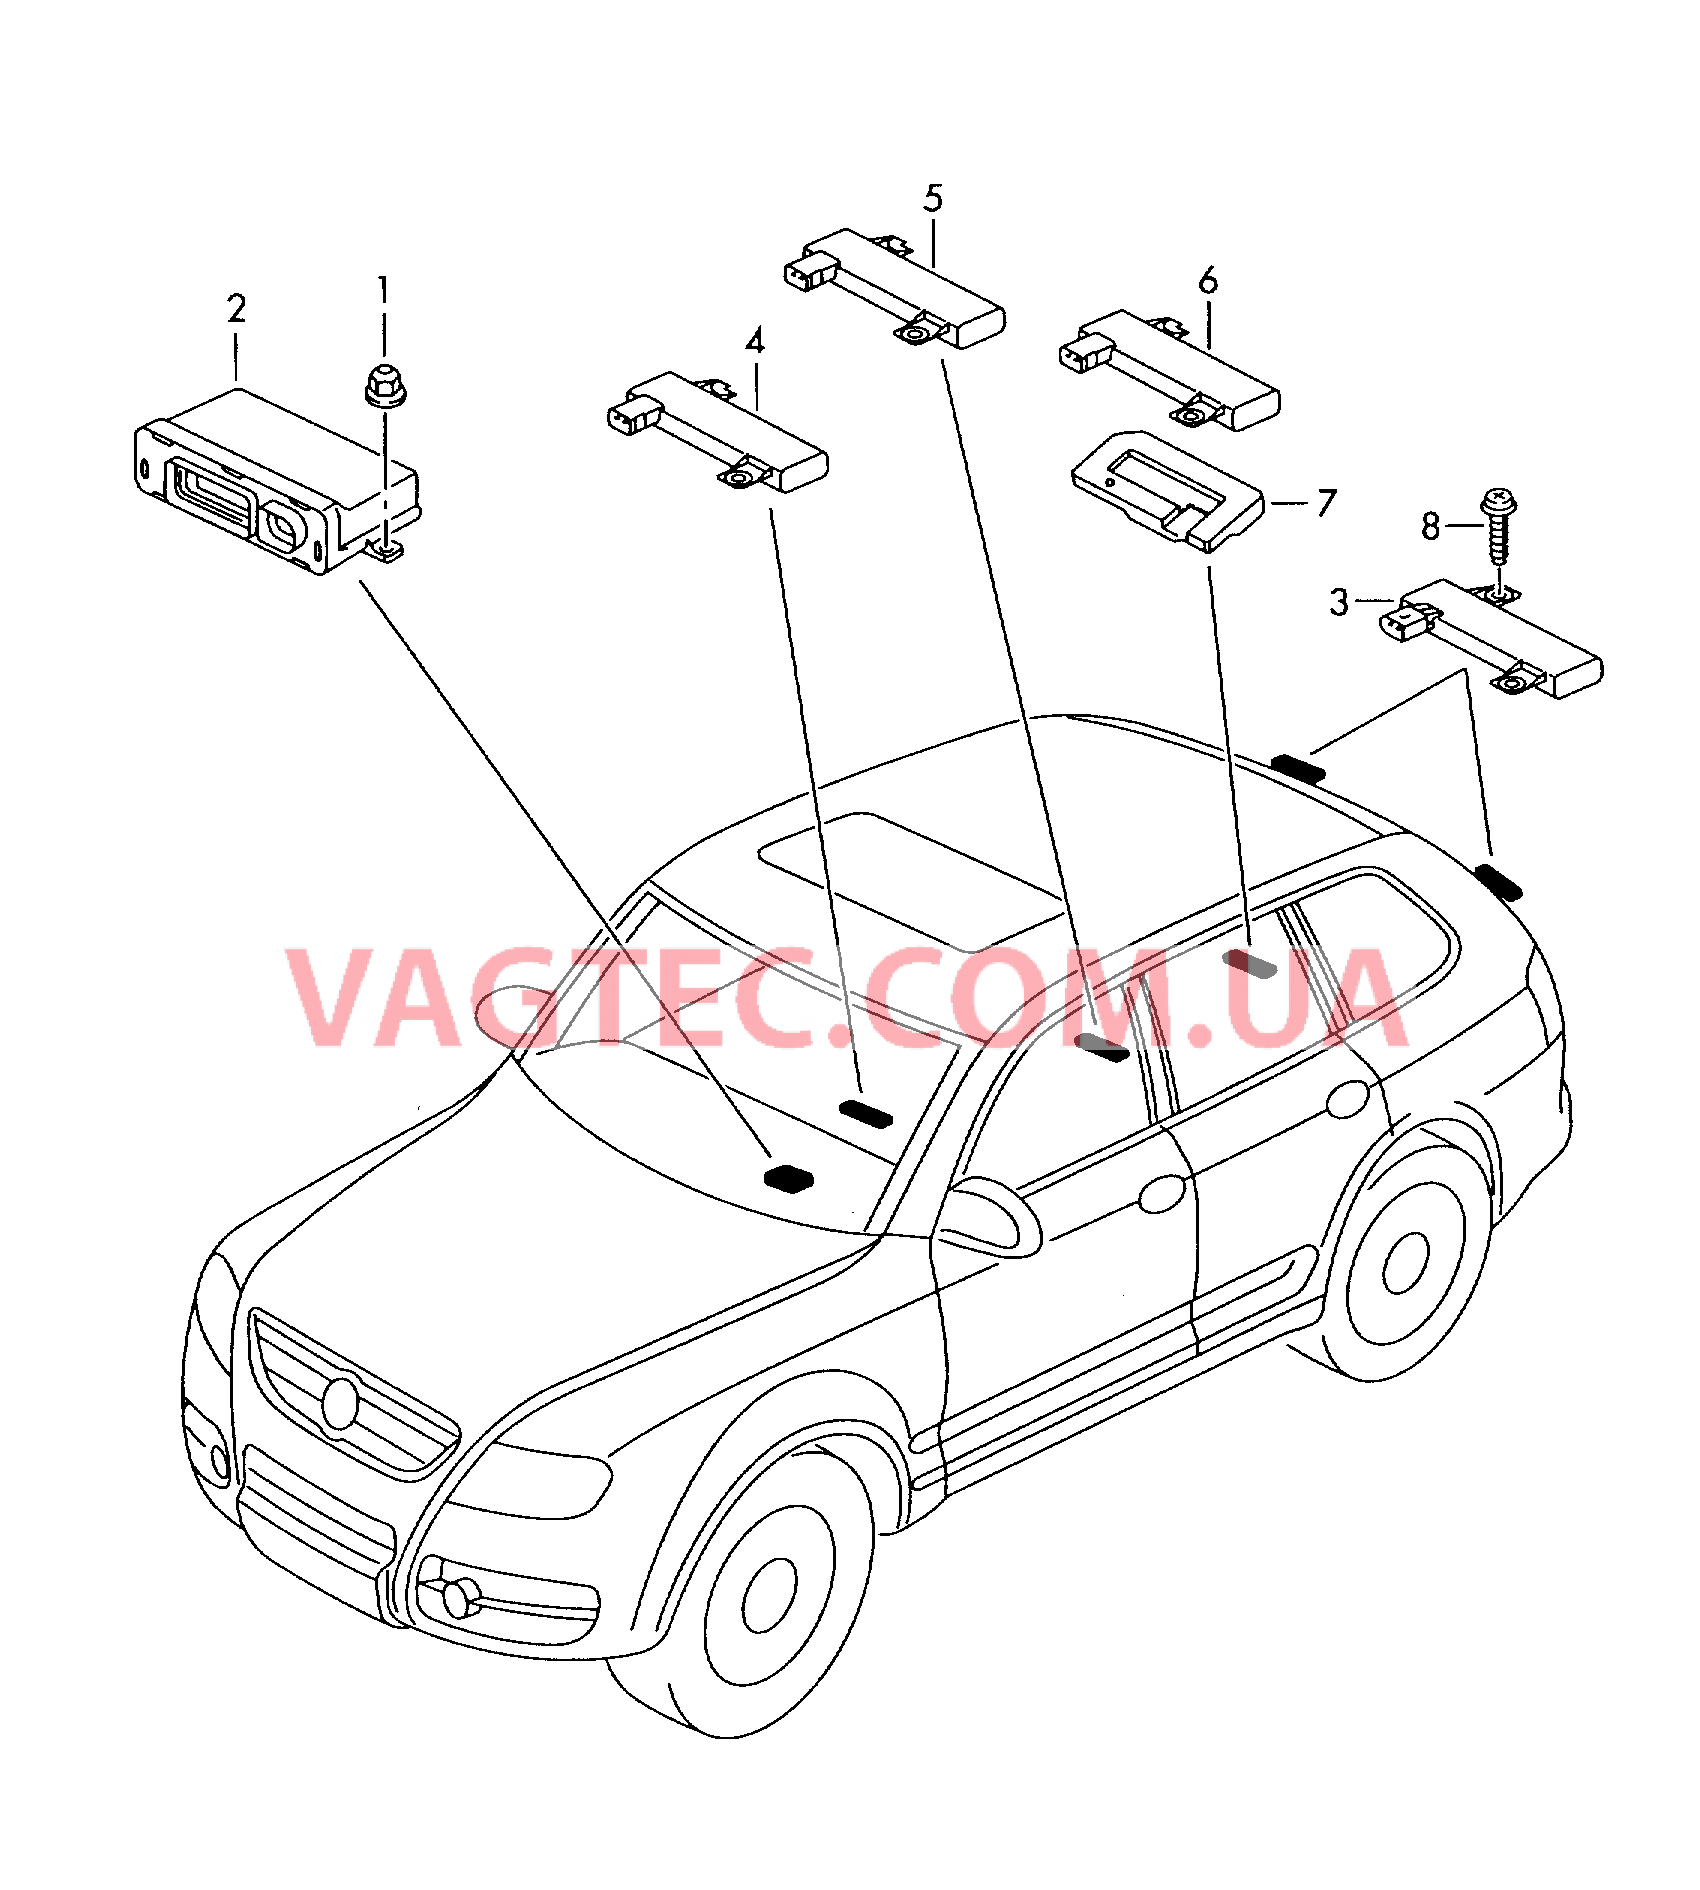 БУ системы санкционирования доступа и пуска двигателя для VW TOUAREG   Антенна системы санкц. доступа и пуска двигателя (KESSY) для VW TOUAREG   для VOLKSWAGEN Touareg 2003